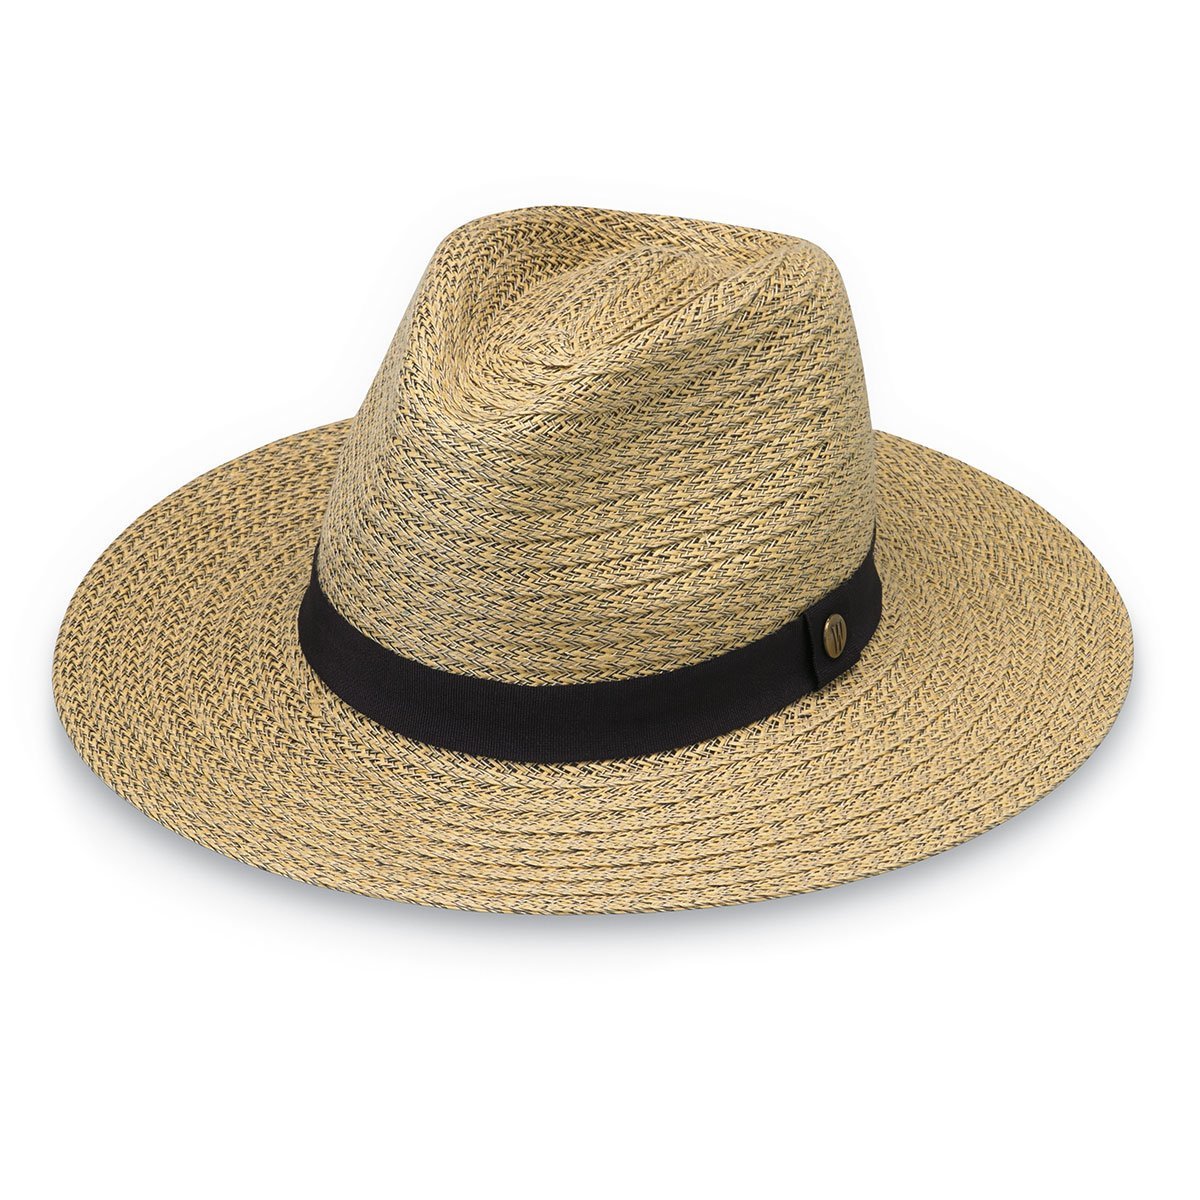 Men's Outback Sun Hat, Wallaroo Hats